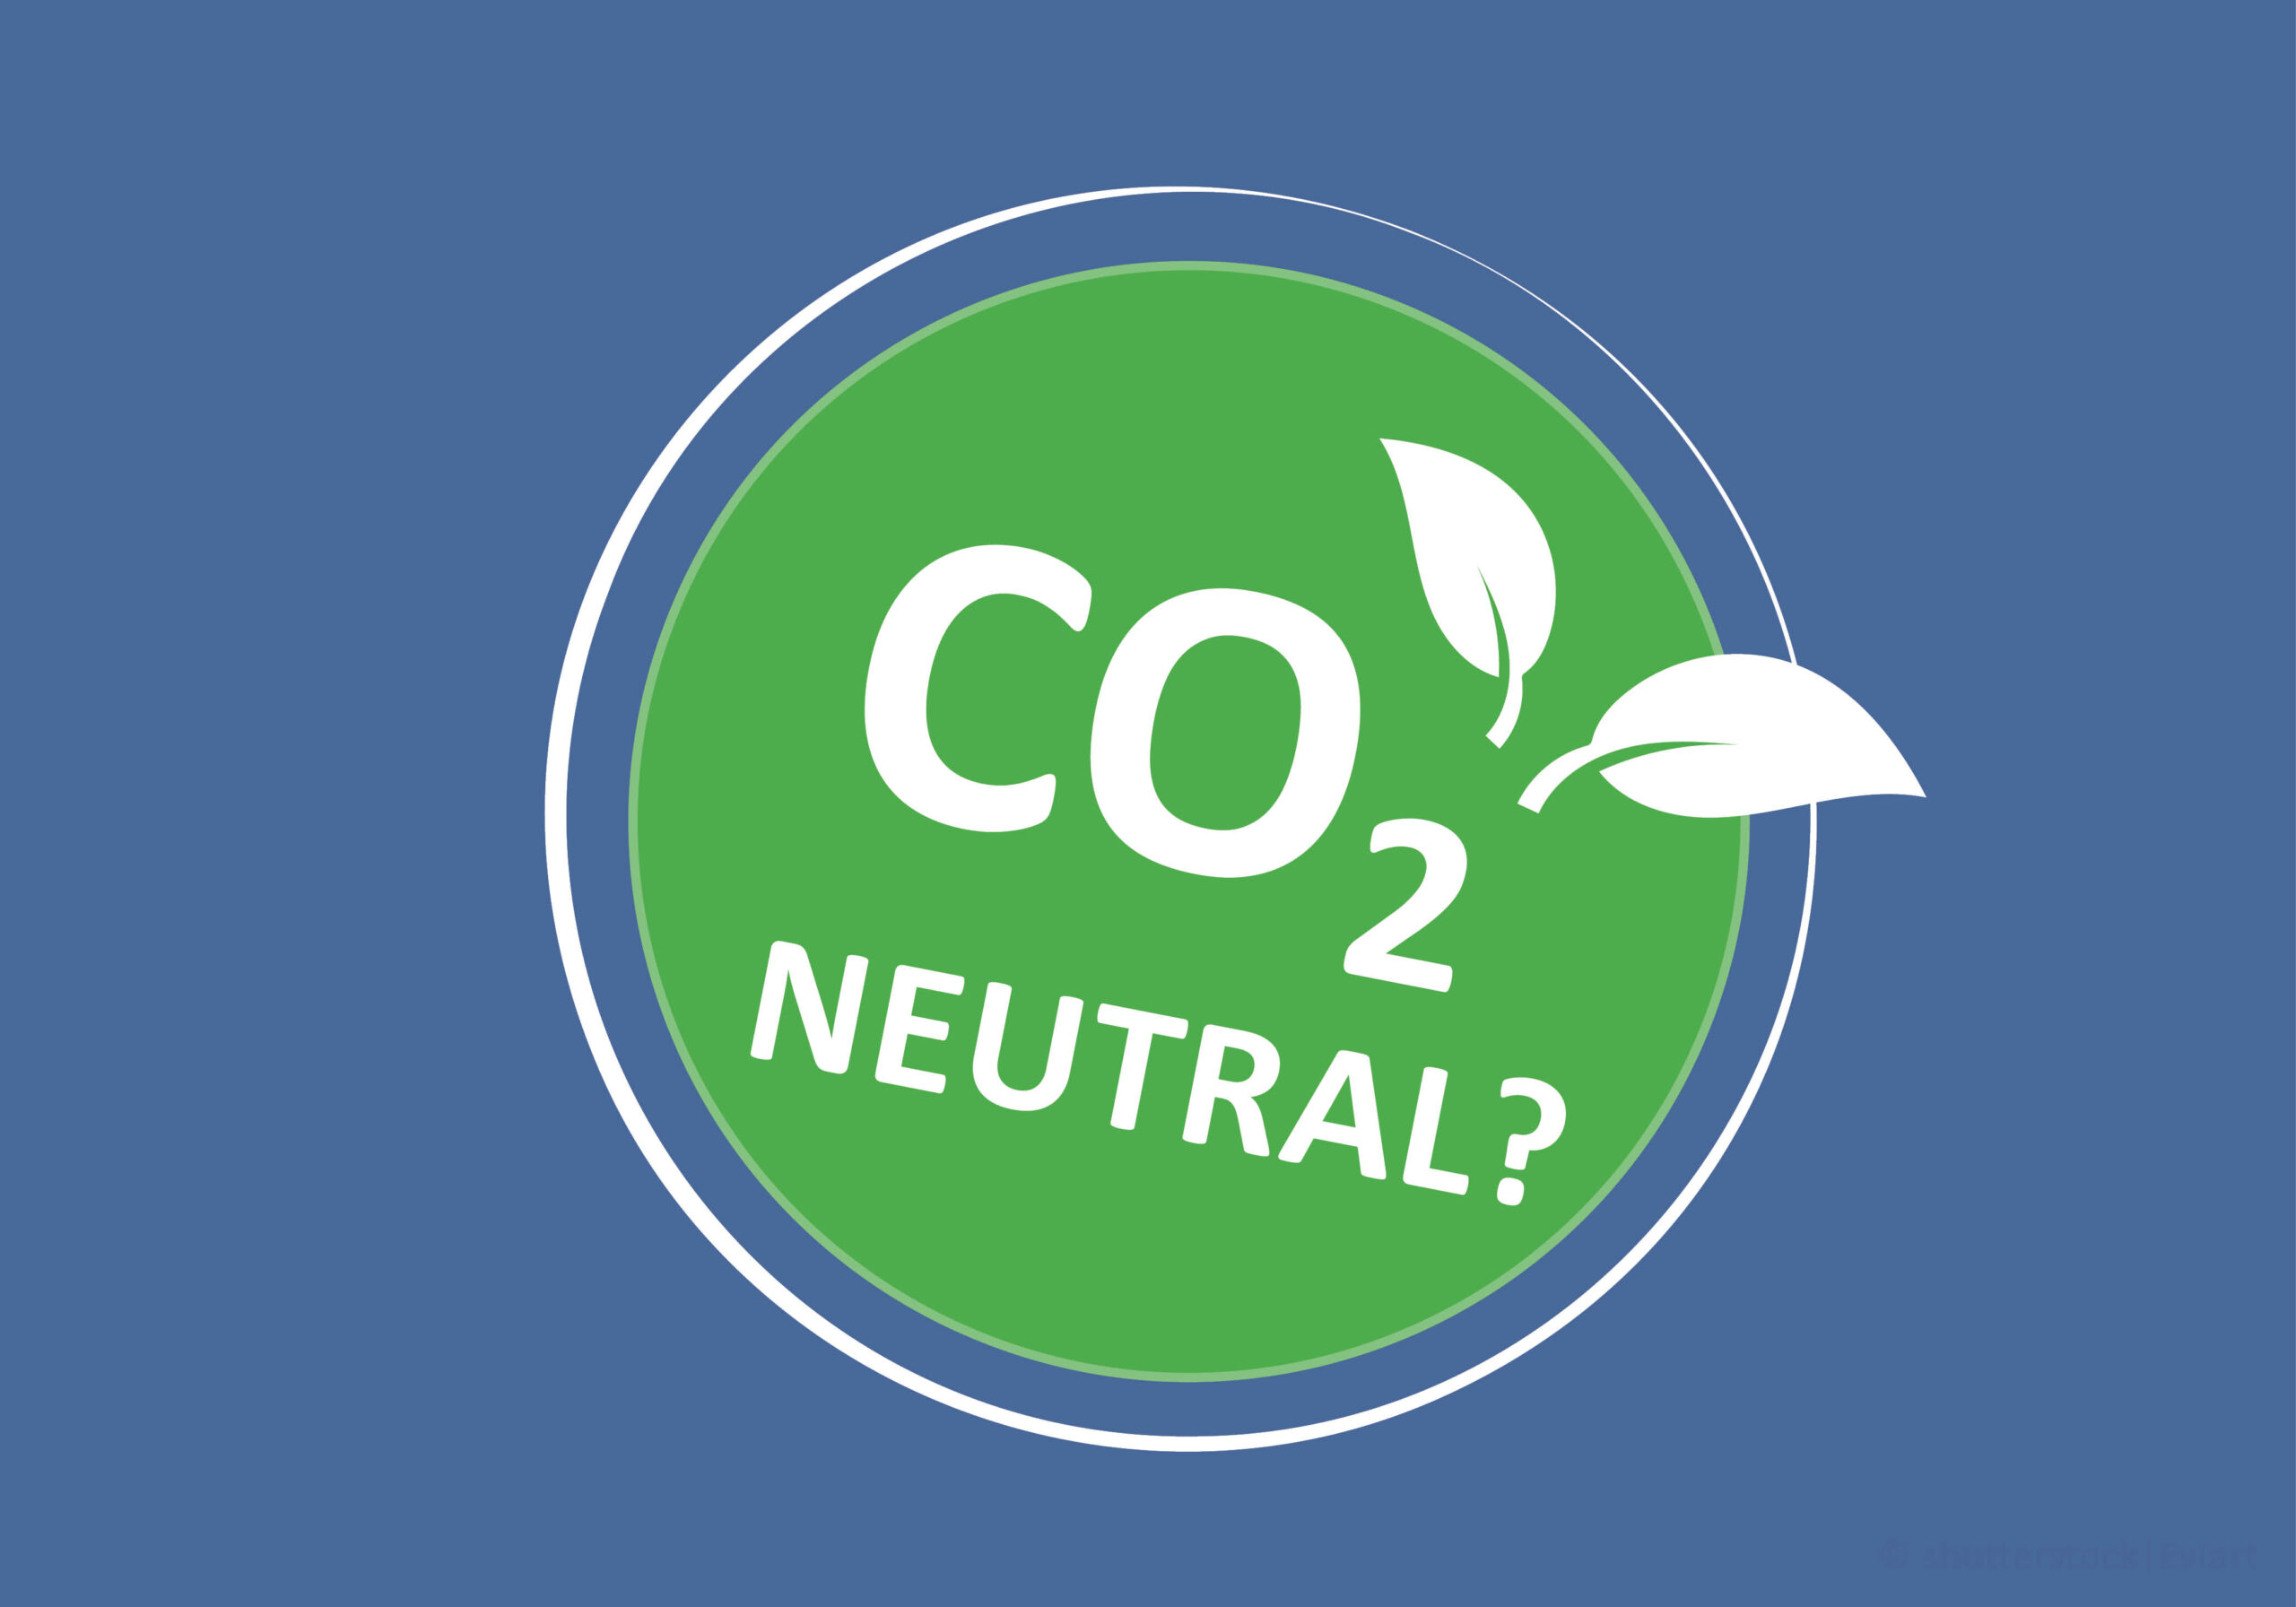 Schmuckbild "Greenwashing oder Klimaretter?" zeigt ein Logo mit dem Text: CO2-neutral?